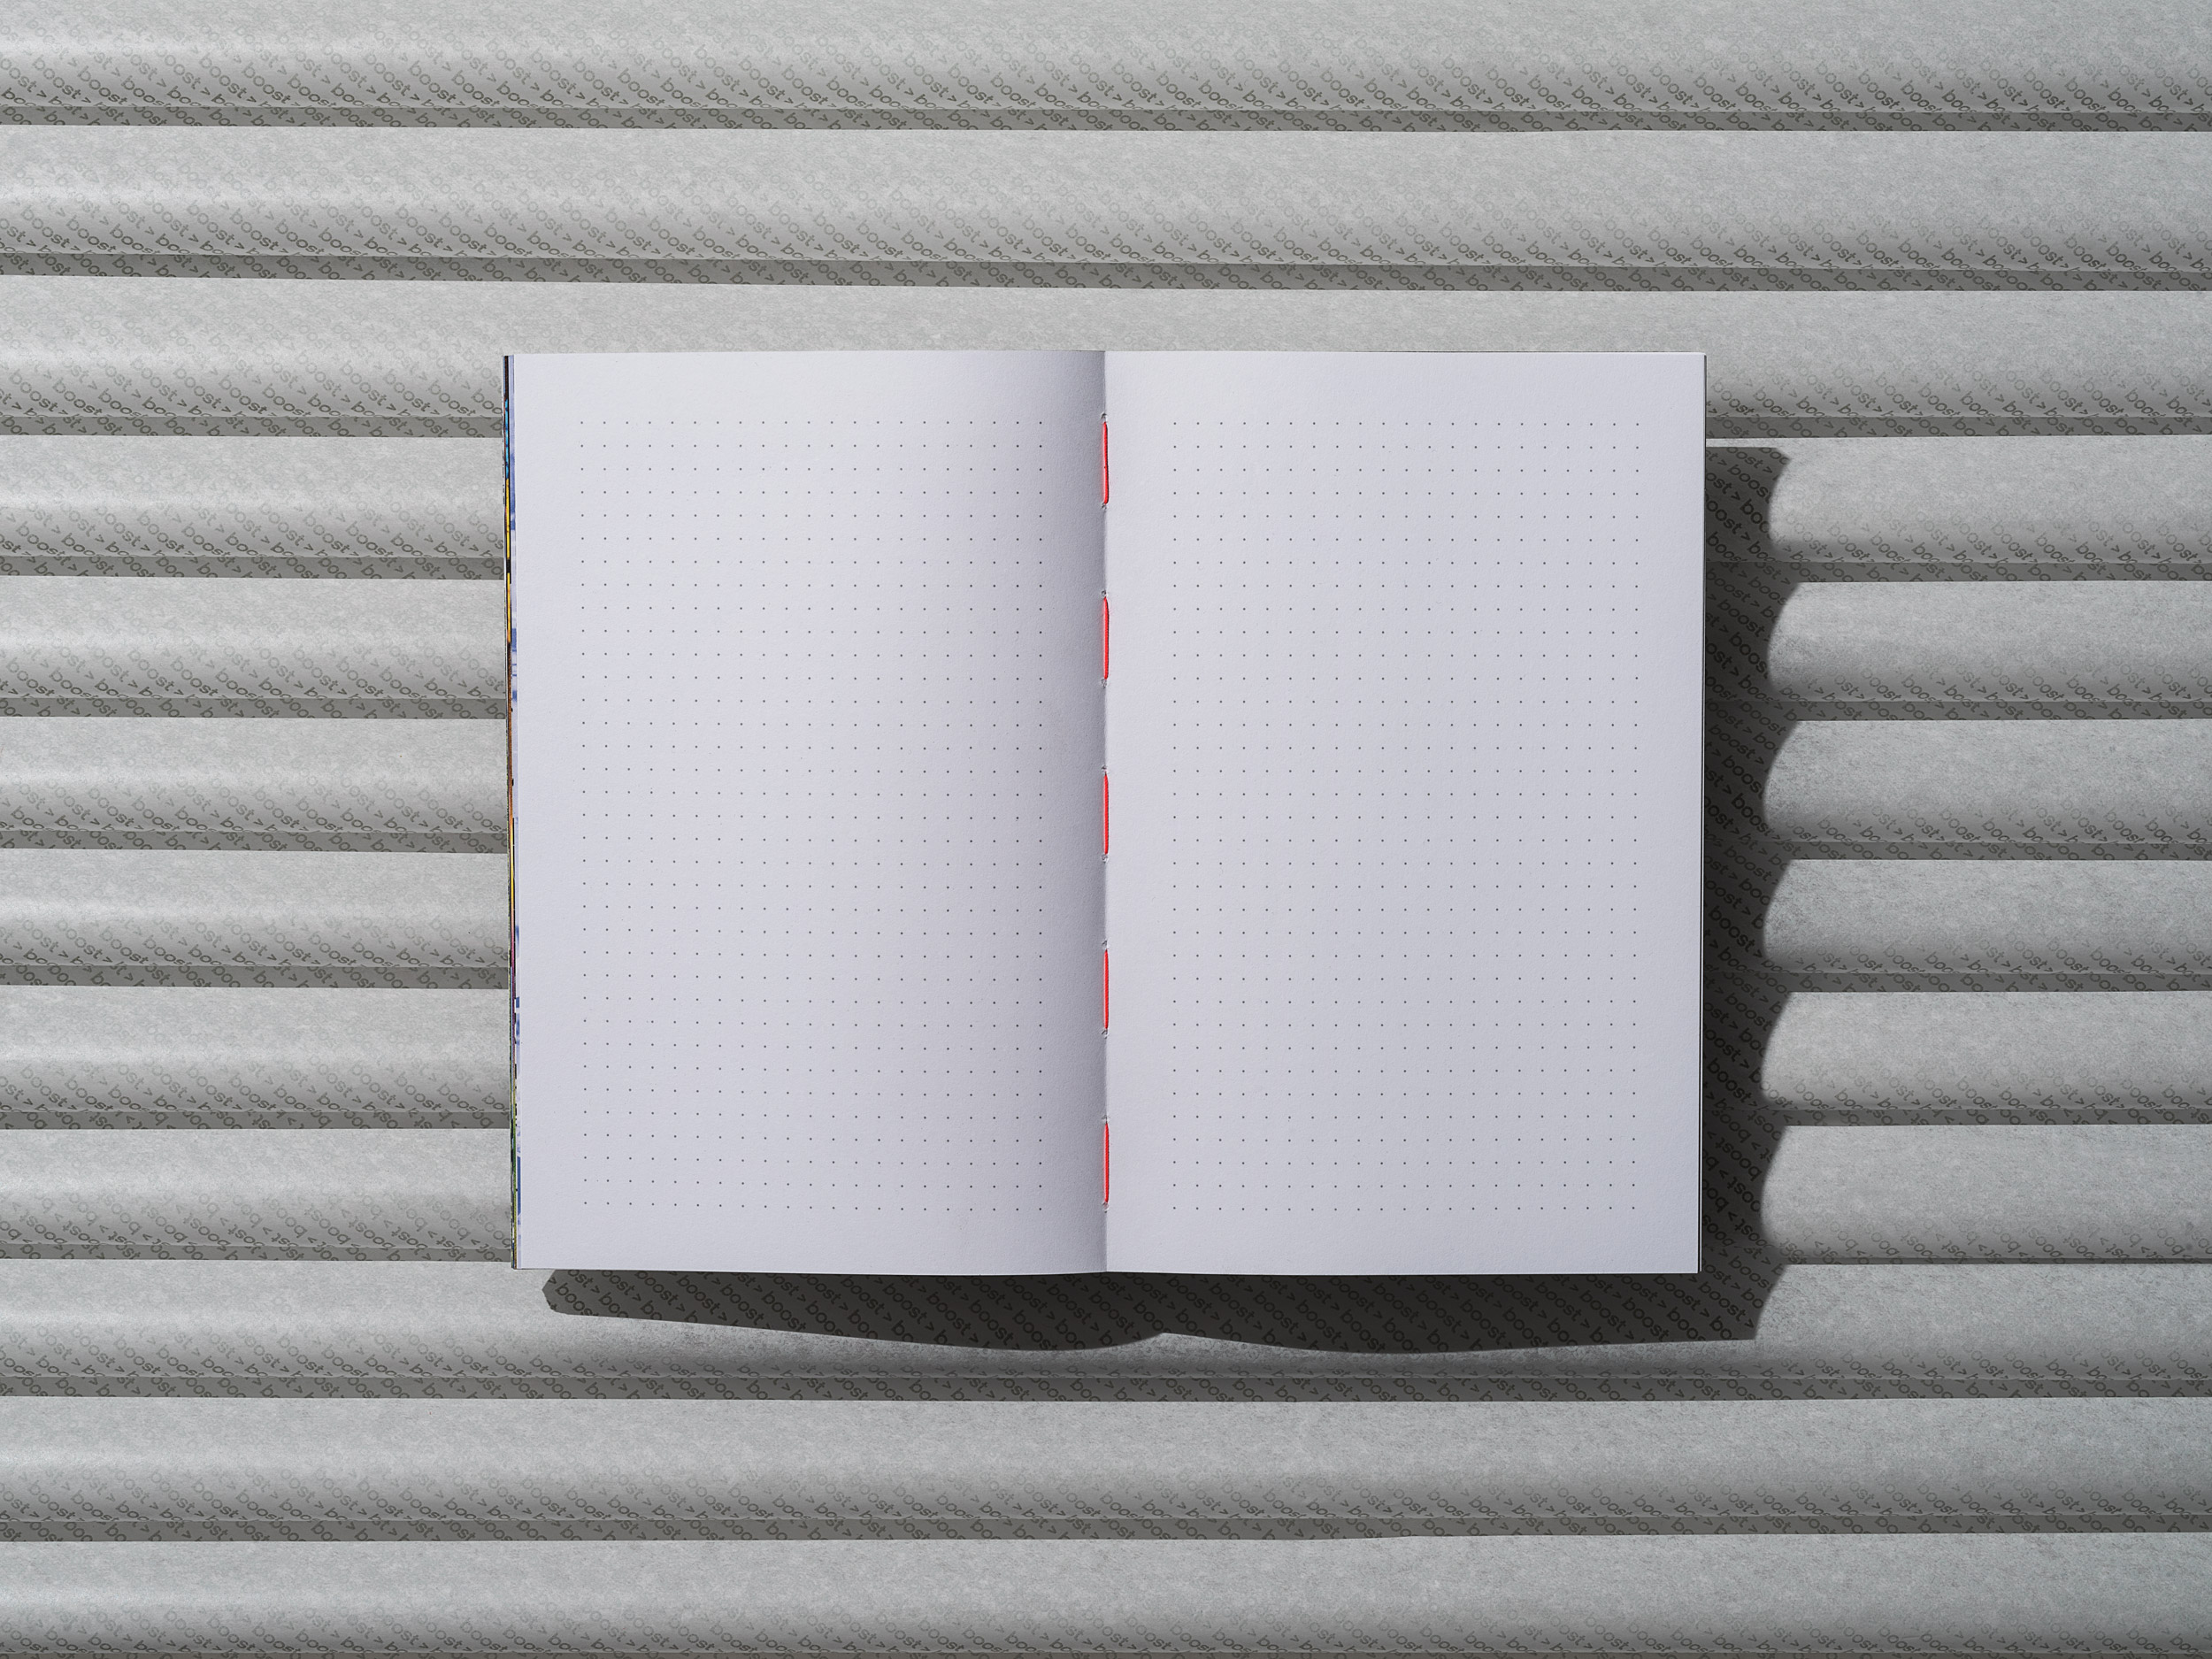 adidas idea book '16 – Nachhaltiges Corporate Notizbuch – Brand Communication, Corporate Publishing, Konzept und Design by ELLIJOT, Fotografiert von Sebastian Autenrieth